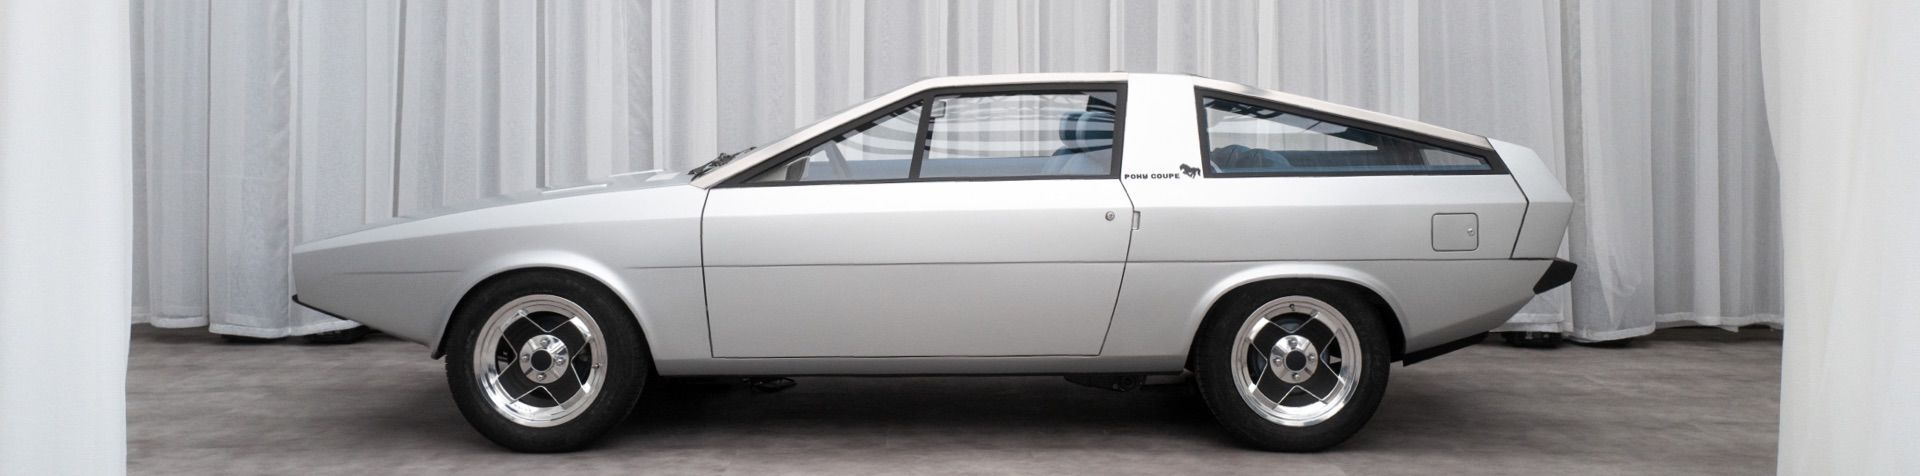 은색 휠 커버와 함께 회색으로 복원된 포니 쿠페 콘셉트 카의 옆모습이 하얀색 커튼으로 장식된 무대에서 선보이고 있다.